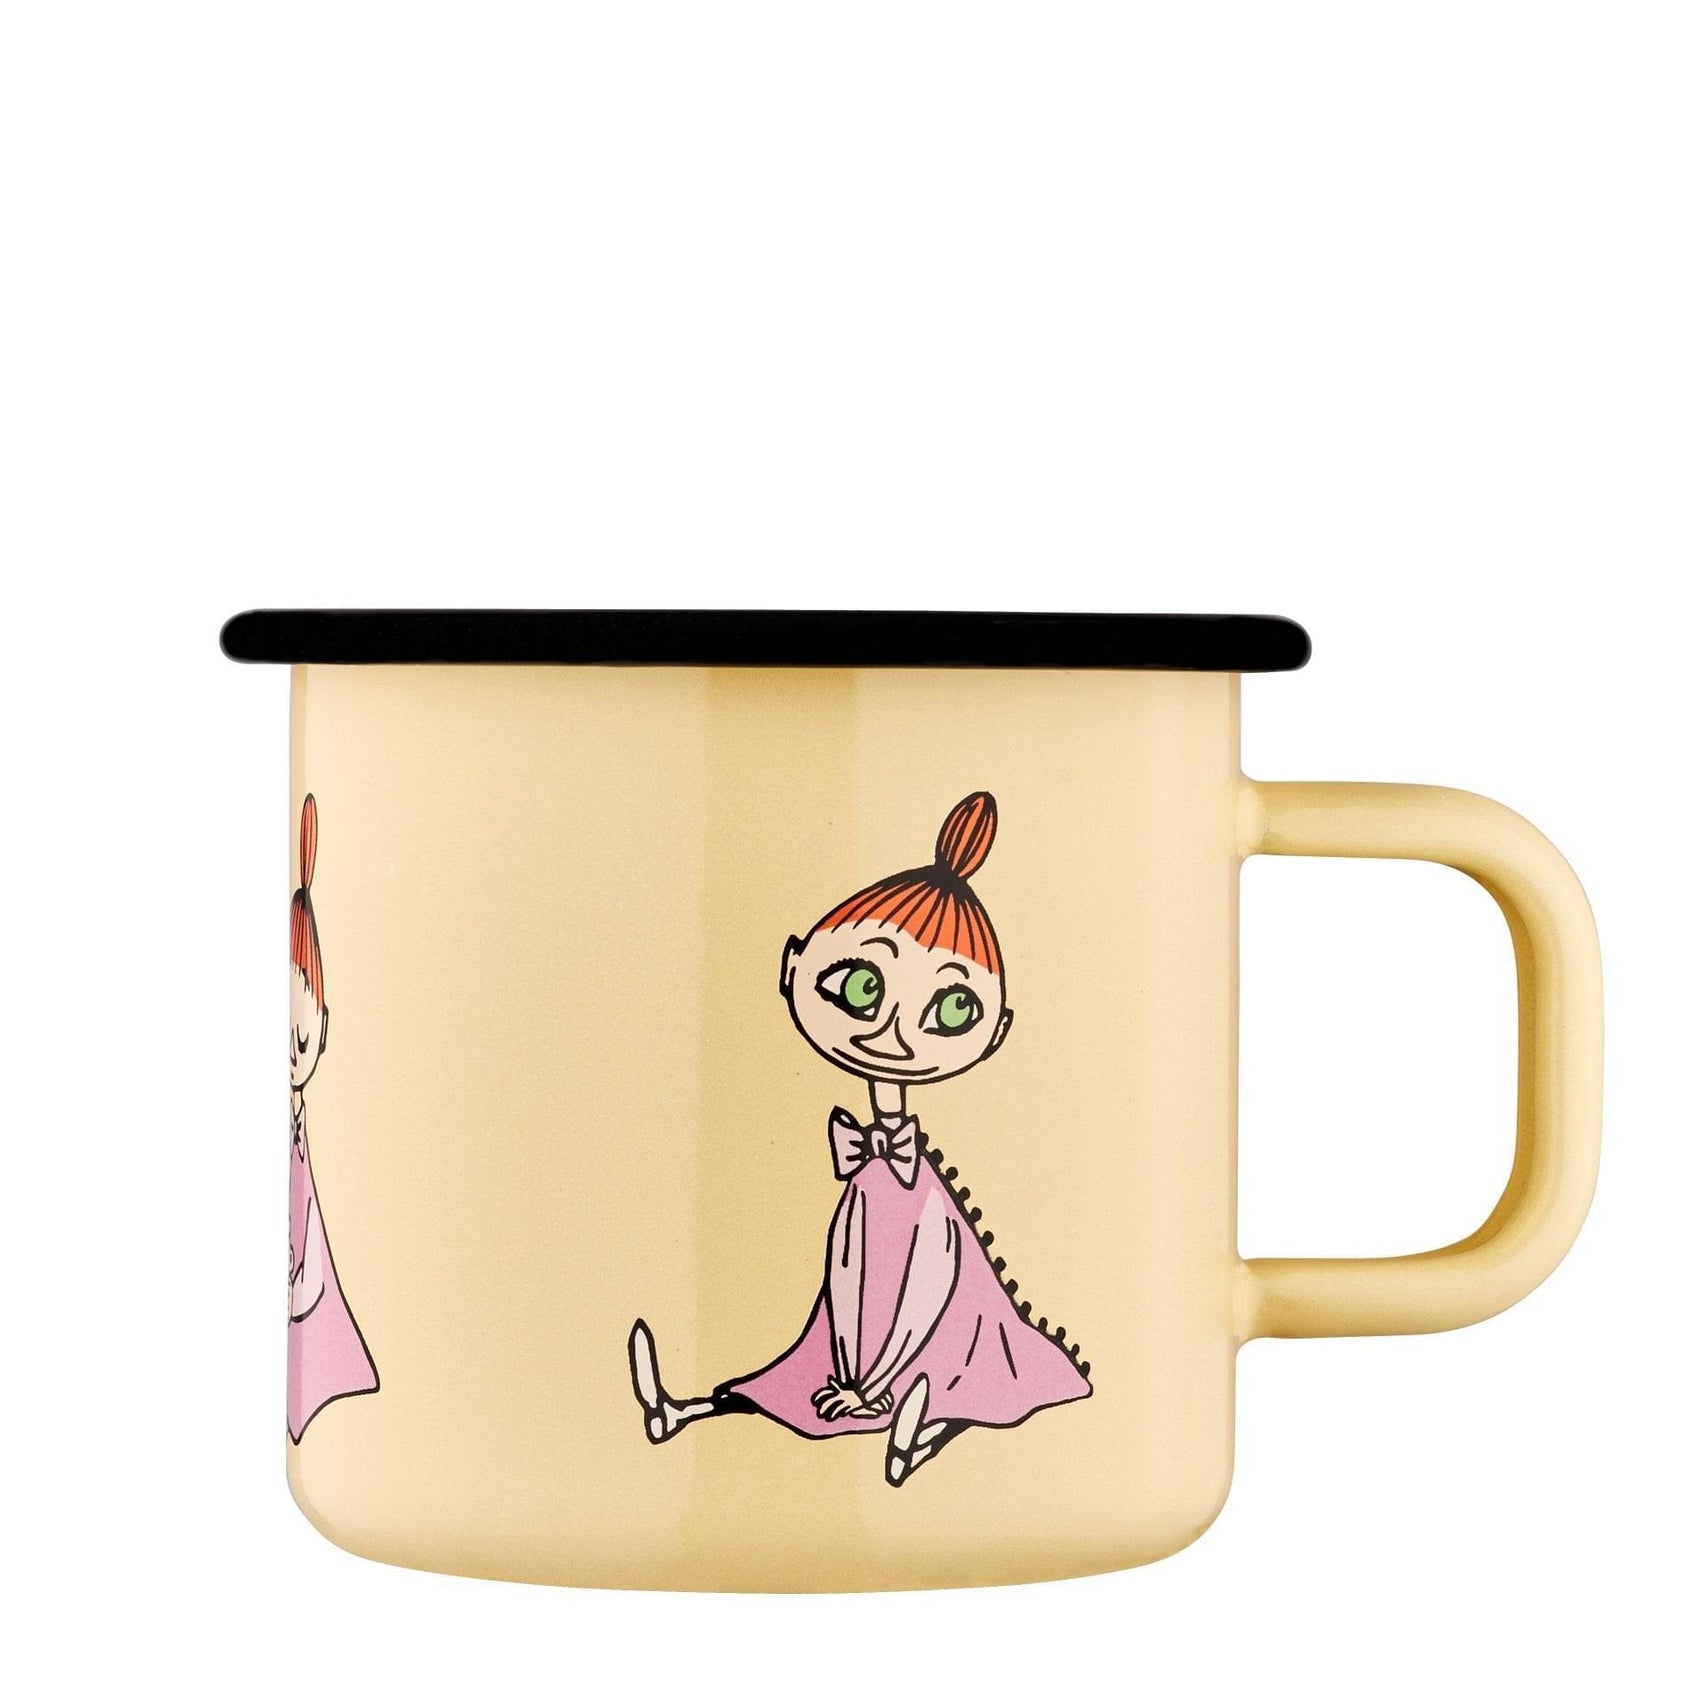 The Moomins enamel mug 3.7dl Mymble Retro